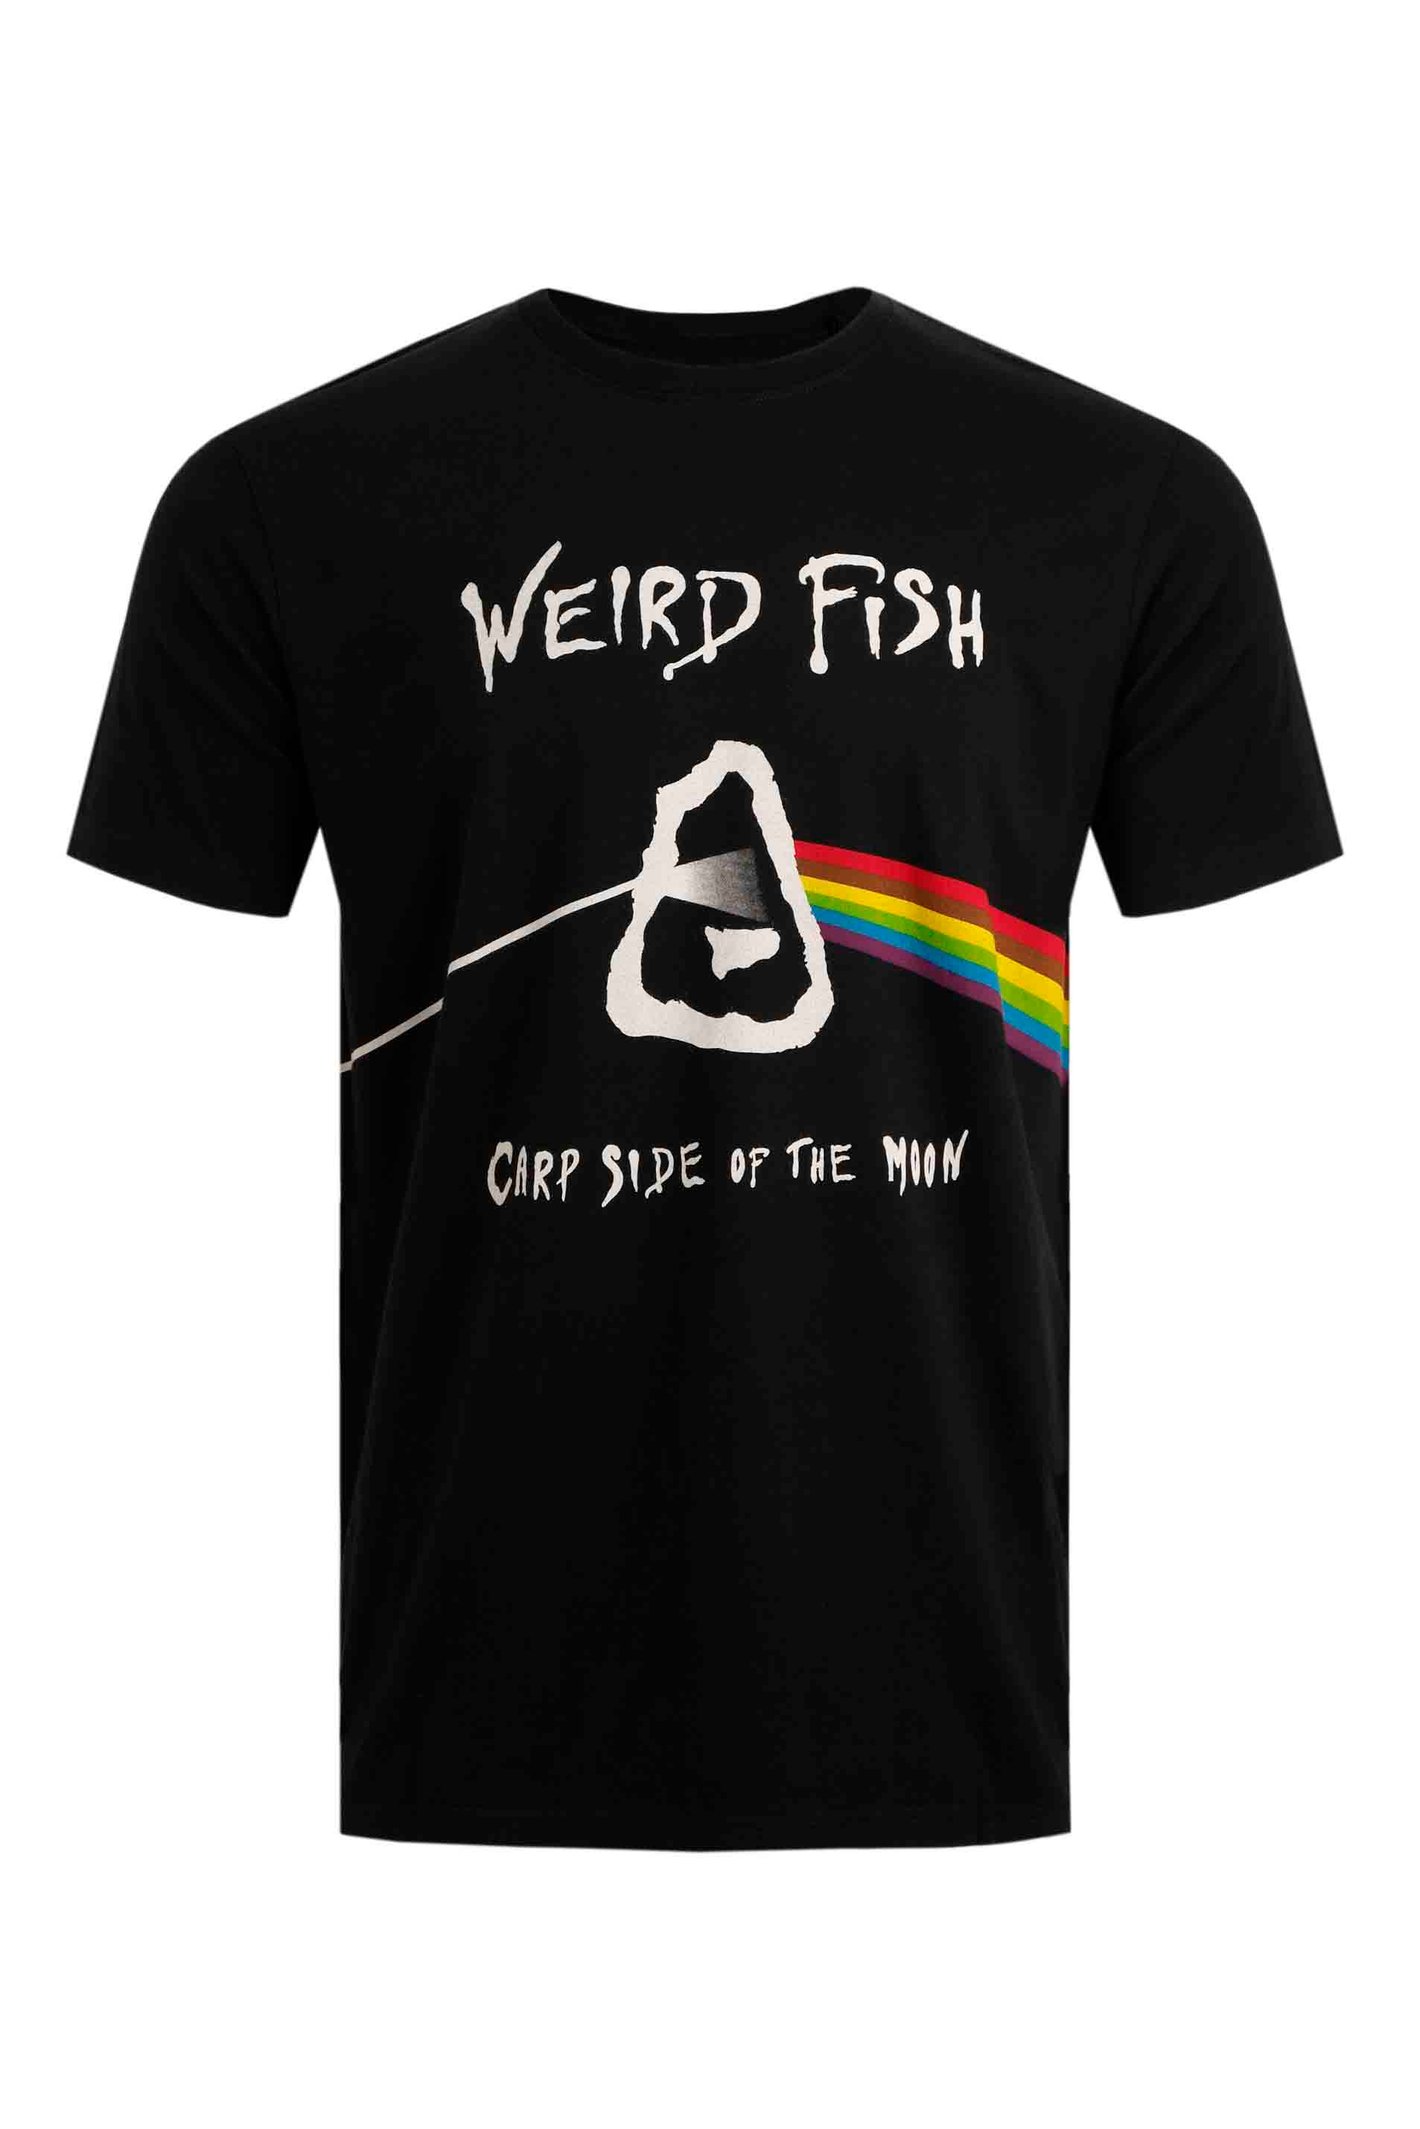 Weird Fish Carp Side Artist T-Shirt Black Size XL